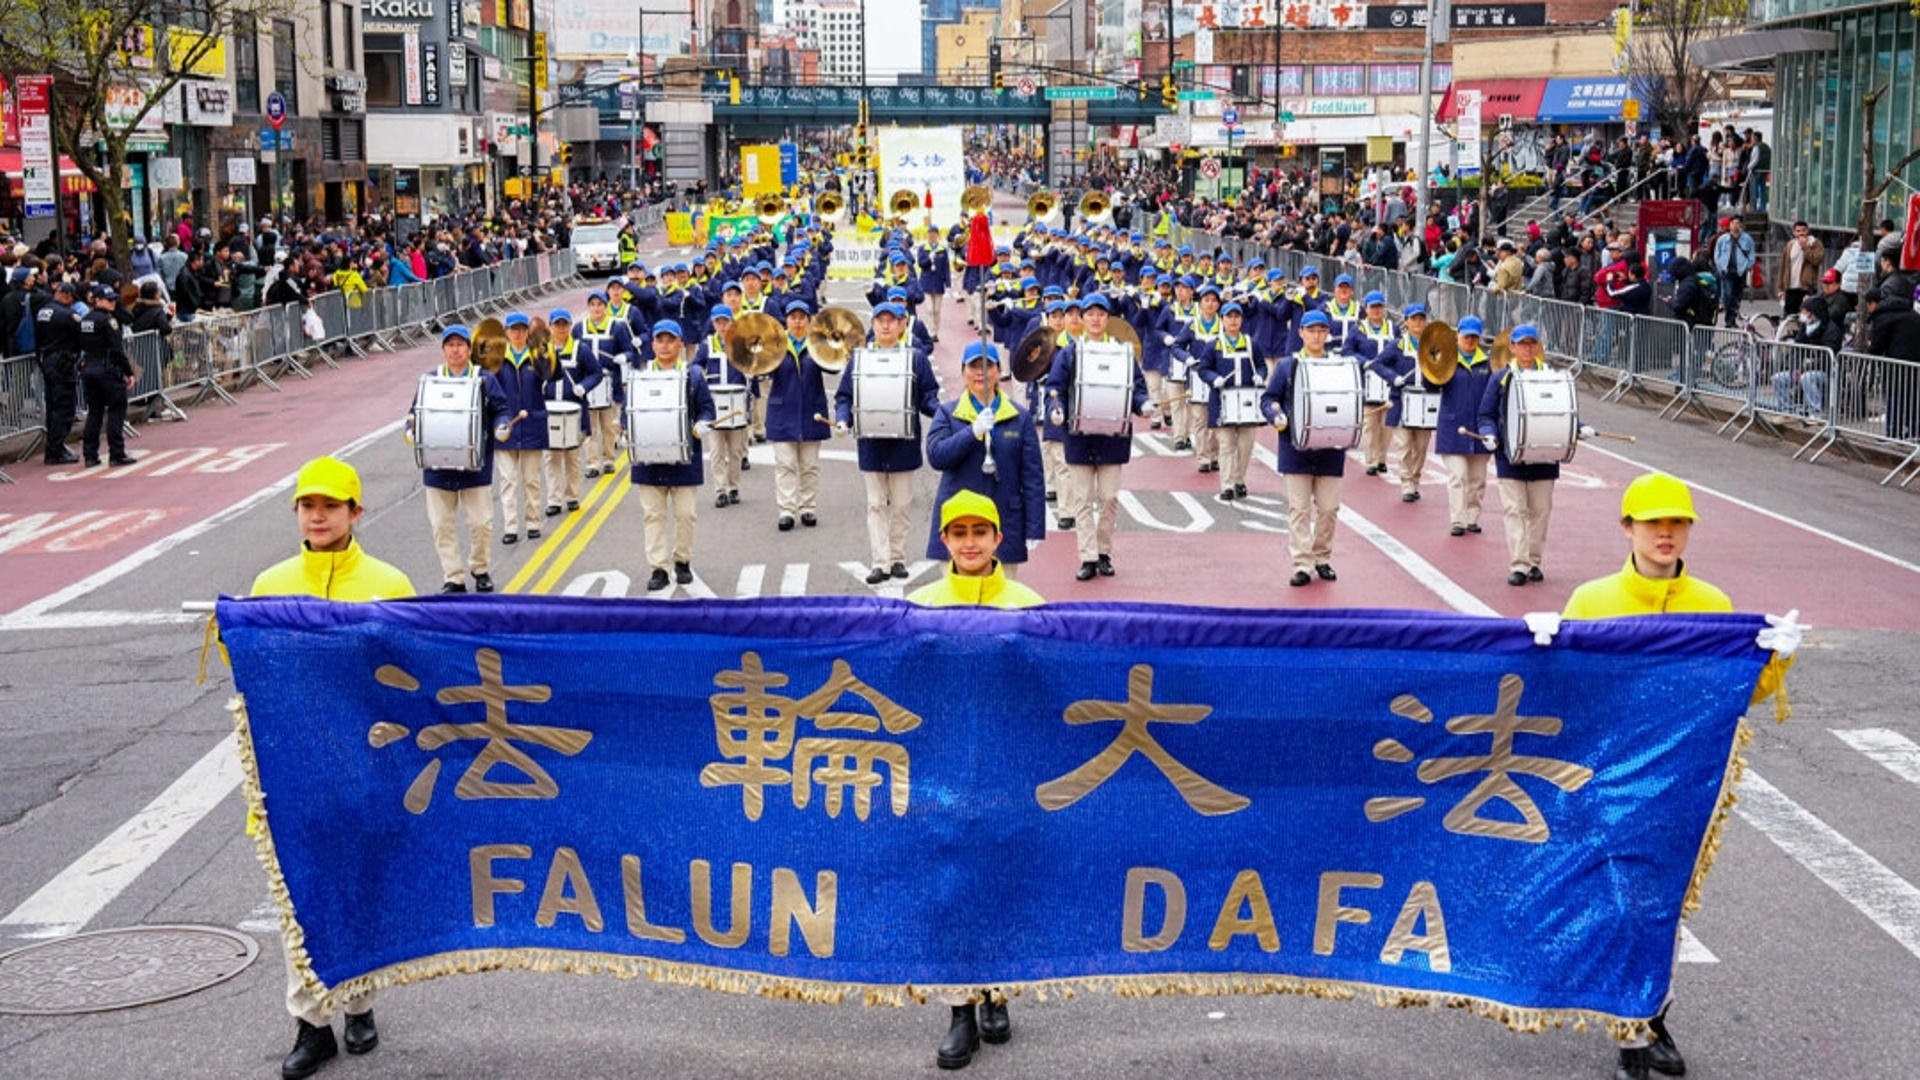 25 лет репрессий: приверженцы Фалуньгун призывают остановить гонения в Китае